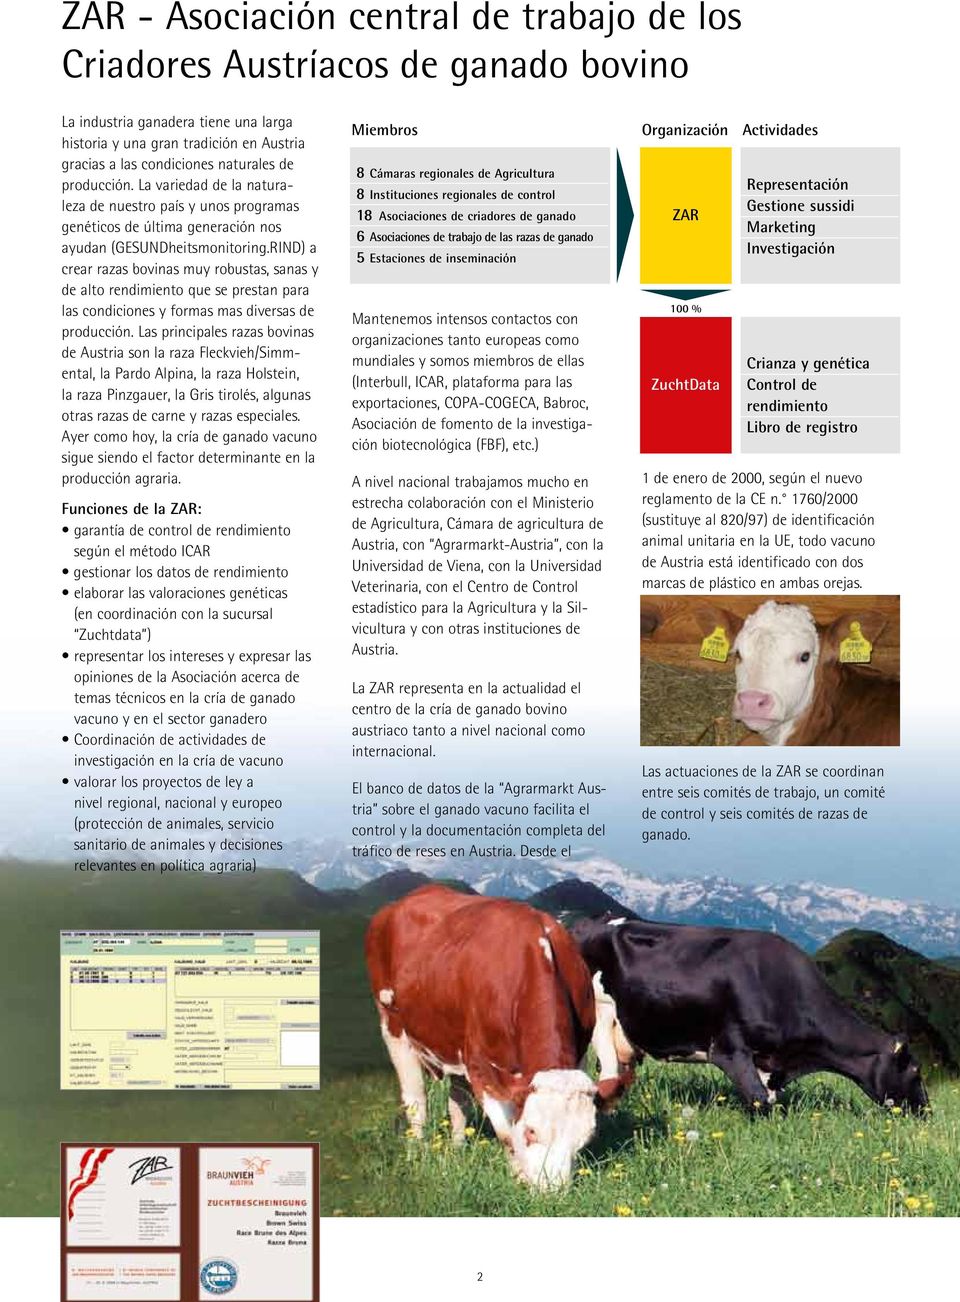 RIND) a crear razas bovinas muy robustas, sanas y de alto rendimiento que se prestan para las condiciones y formas mas diversas de producción.